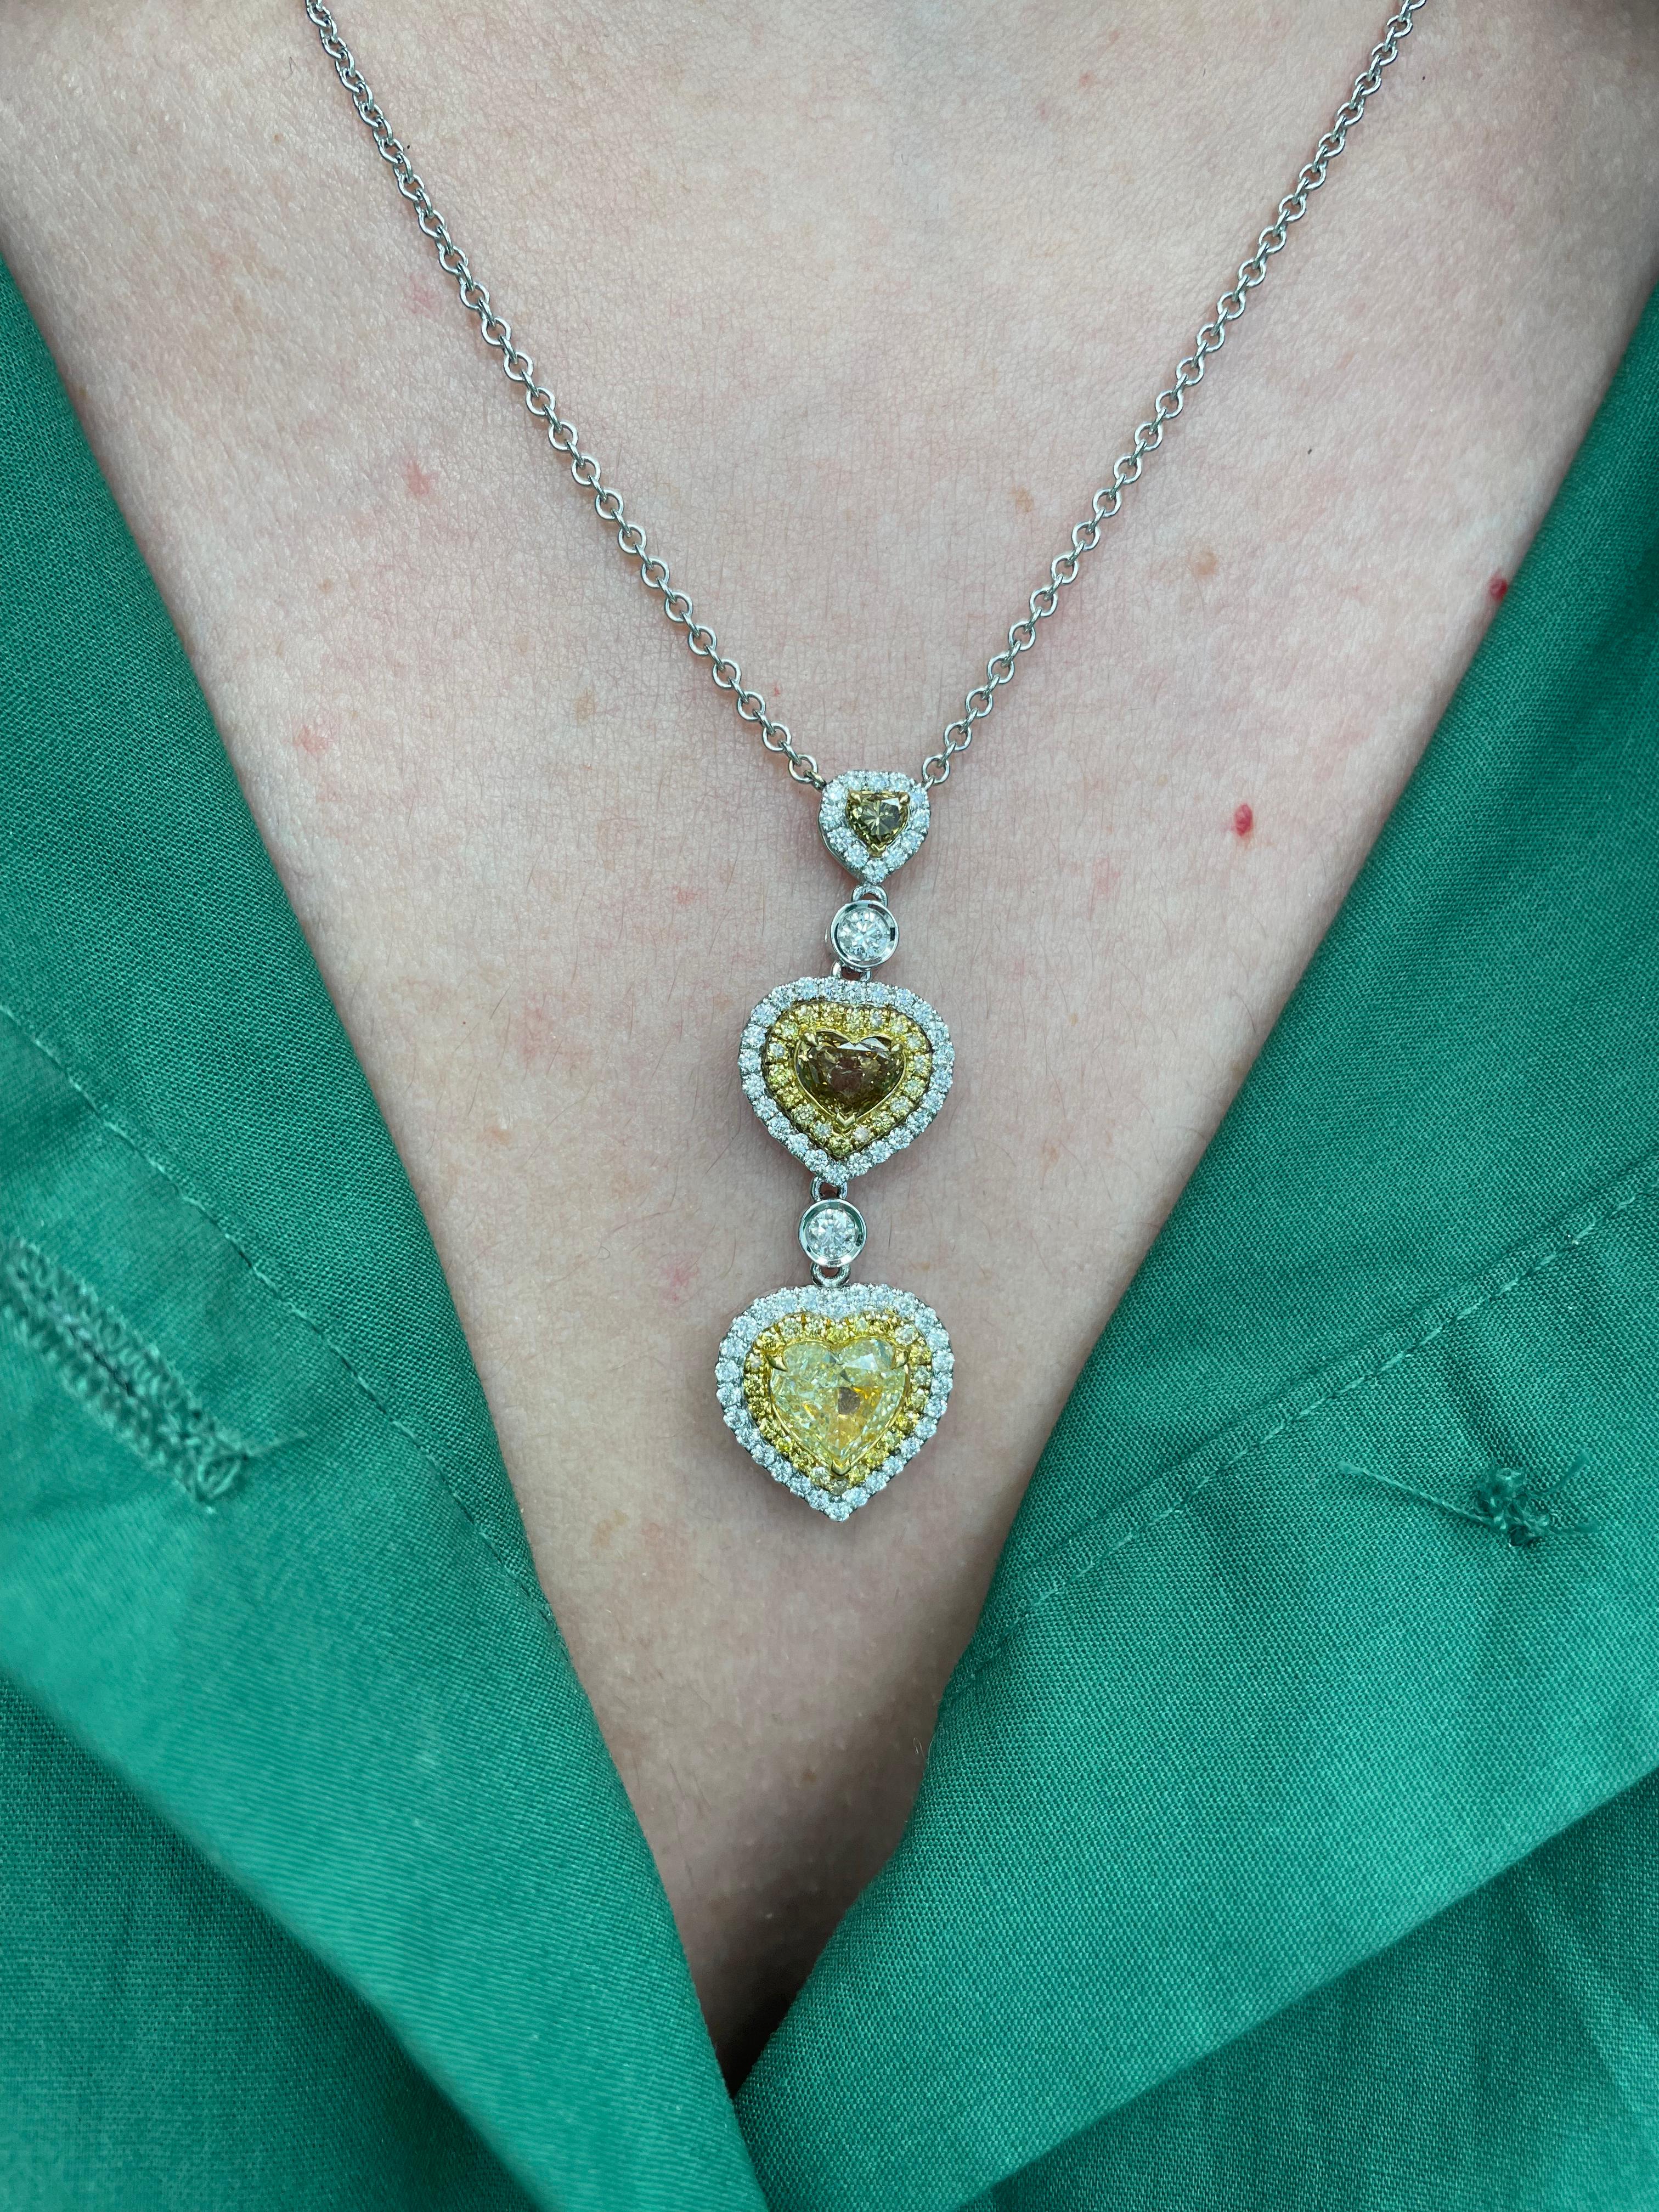 Exquis collier pendentif en forme de cœur en diamants de couleur fantaisie avec double halos de diamants, par Alexander Beverly Hills.
3 diamants en forme de cœur de couleur jaune fantaisie à brun fantaisie, 3,54ct. Complété par 0,78 carats de